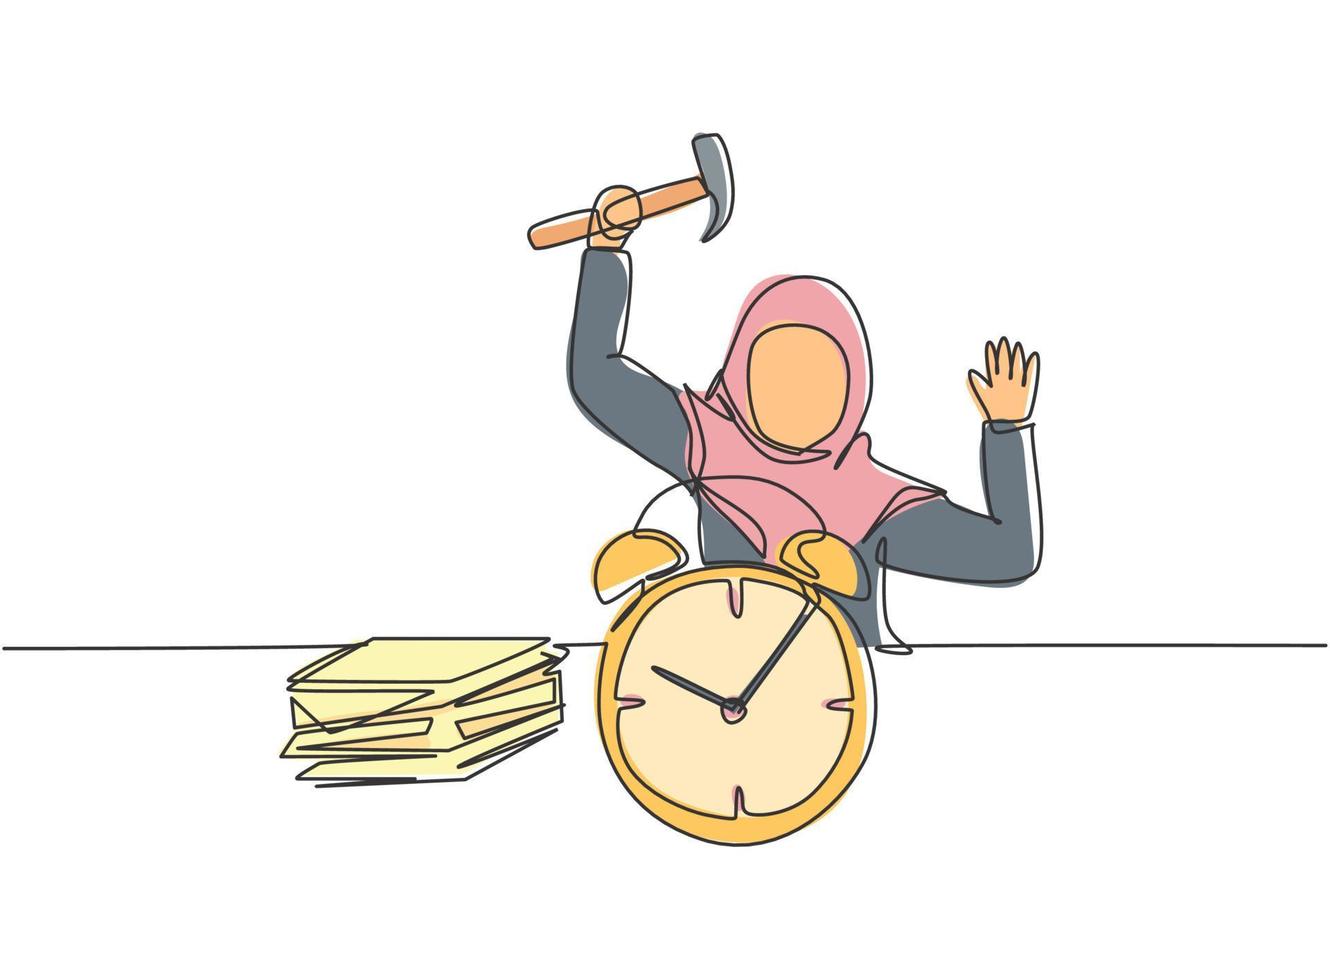 kontinuerlig en radritning stressande ung arabisk kvinnlig arbetare slog väckarklockan med hammare. minimalism metafor verksamhet tidsbegrepp. enkel linje rita design vektor grafisk illustration.